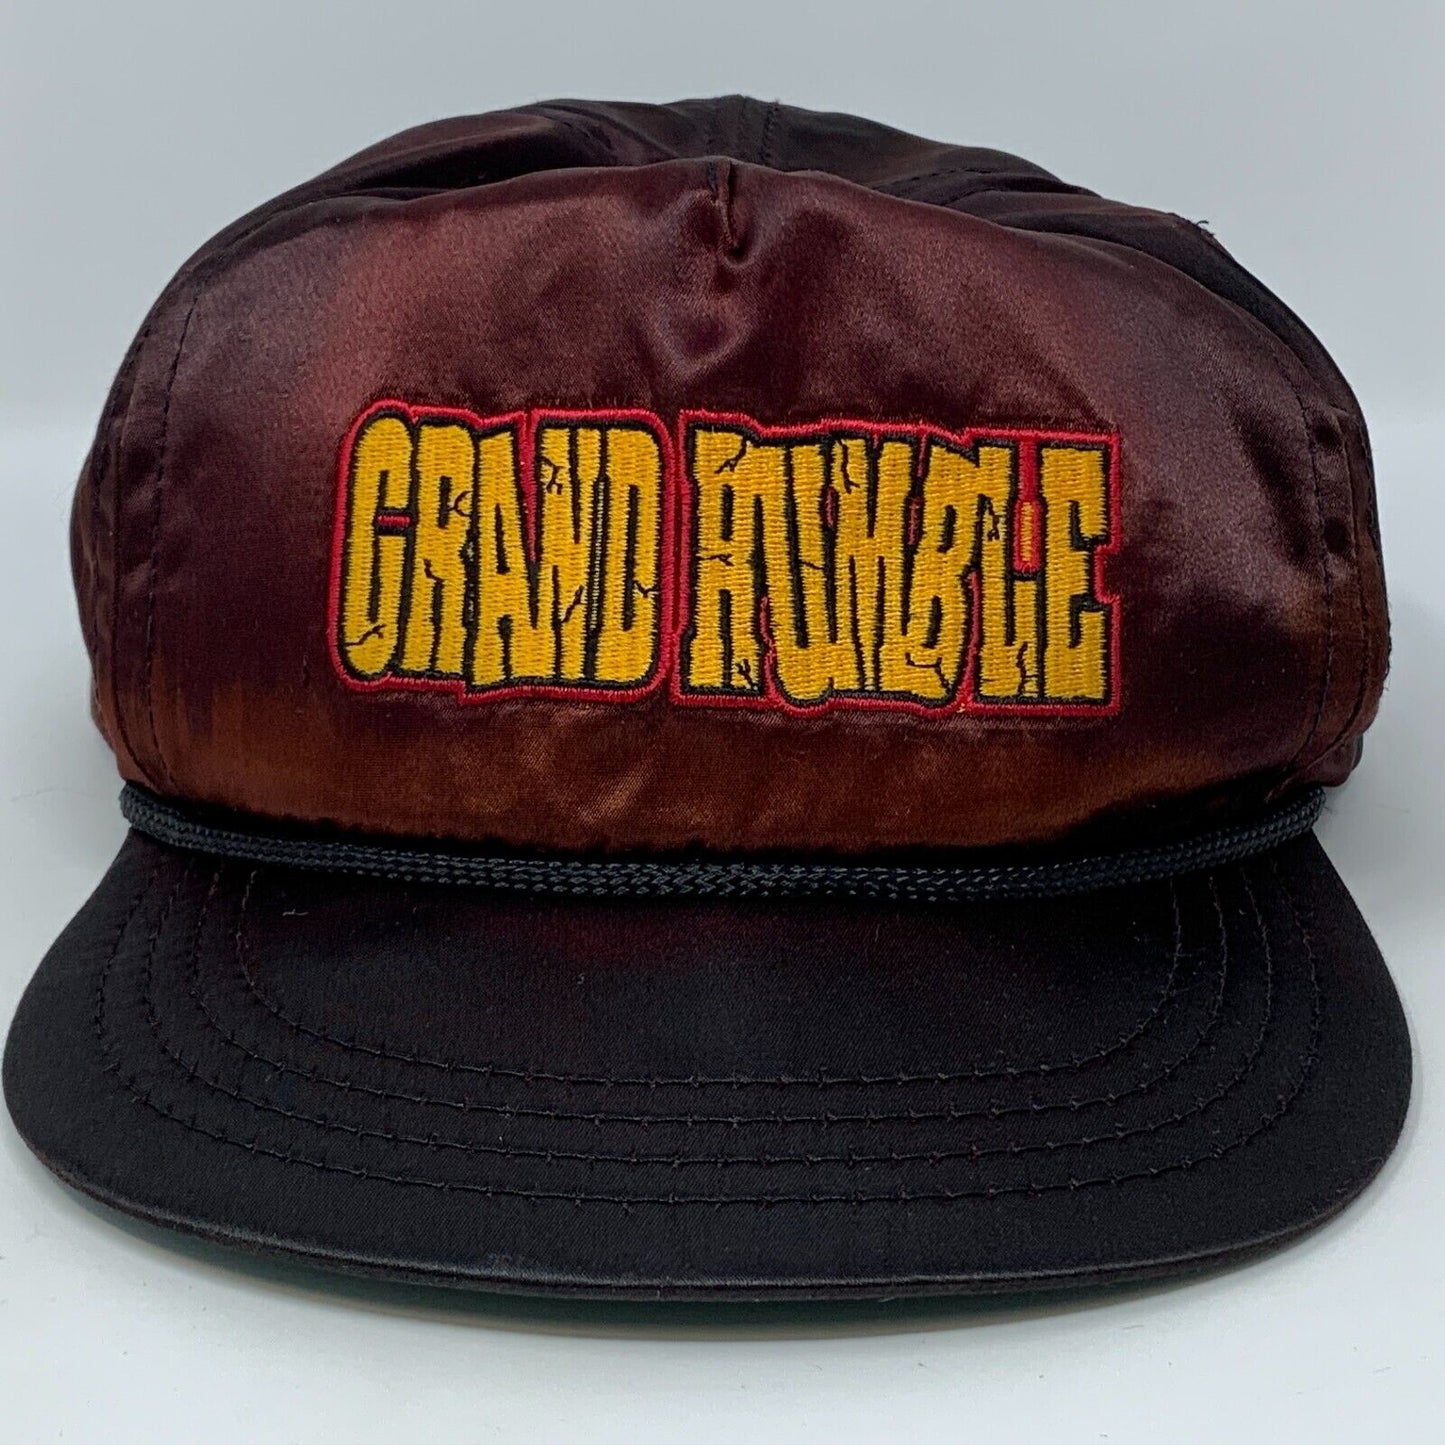 1994 De La Hoya Paez 拳击后扣帽复古 90 年代 Grand Rumble 棒球帽